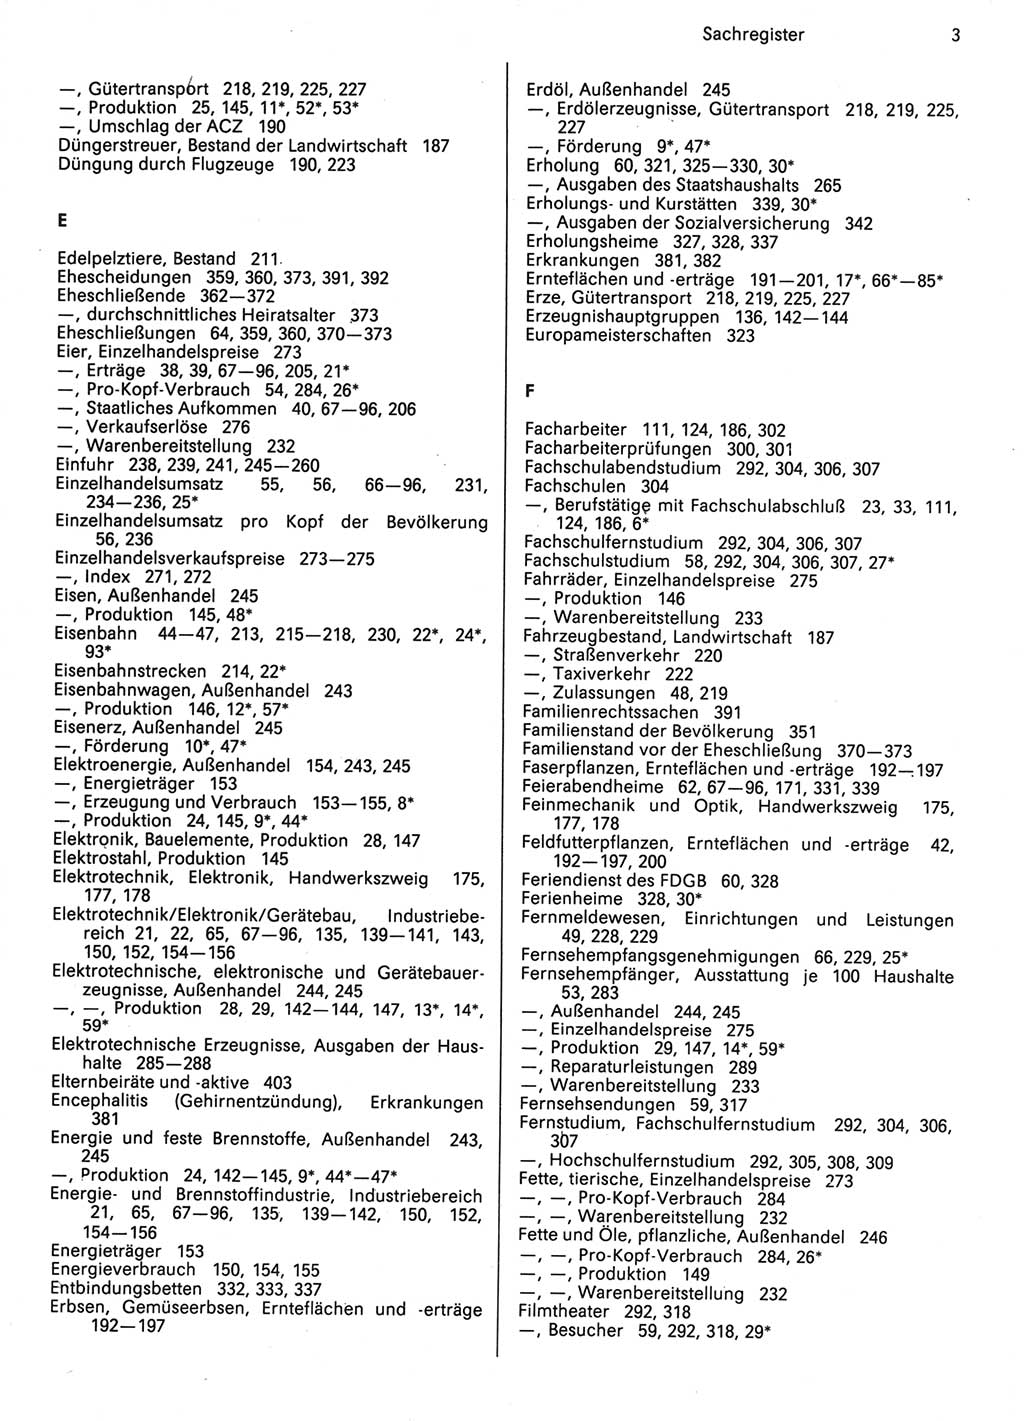 Statistisches Jahrbuch der Deutschen Demokratischen Republik (DDR) 1987, Seite 3 (Stat. Jb. DDR 1987, S. 3)